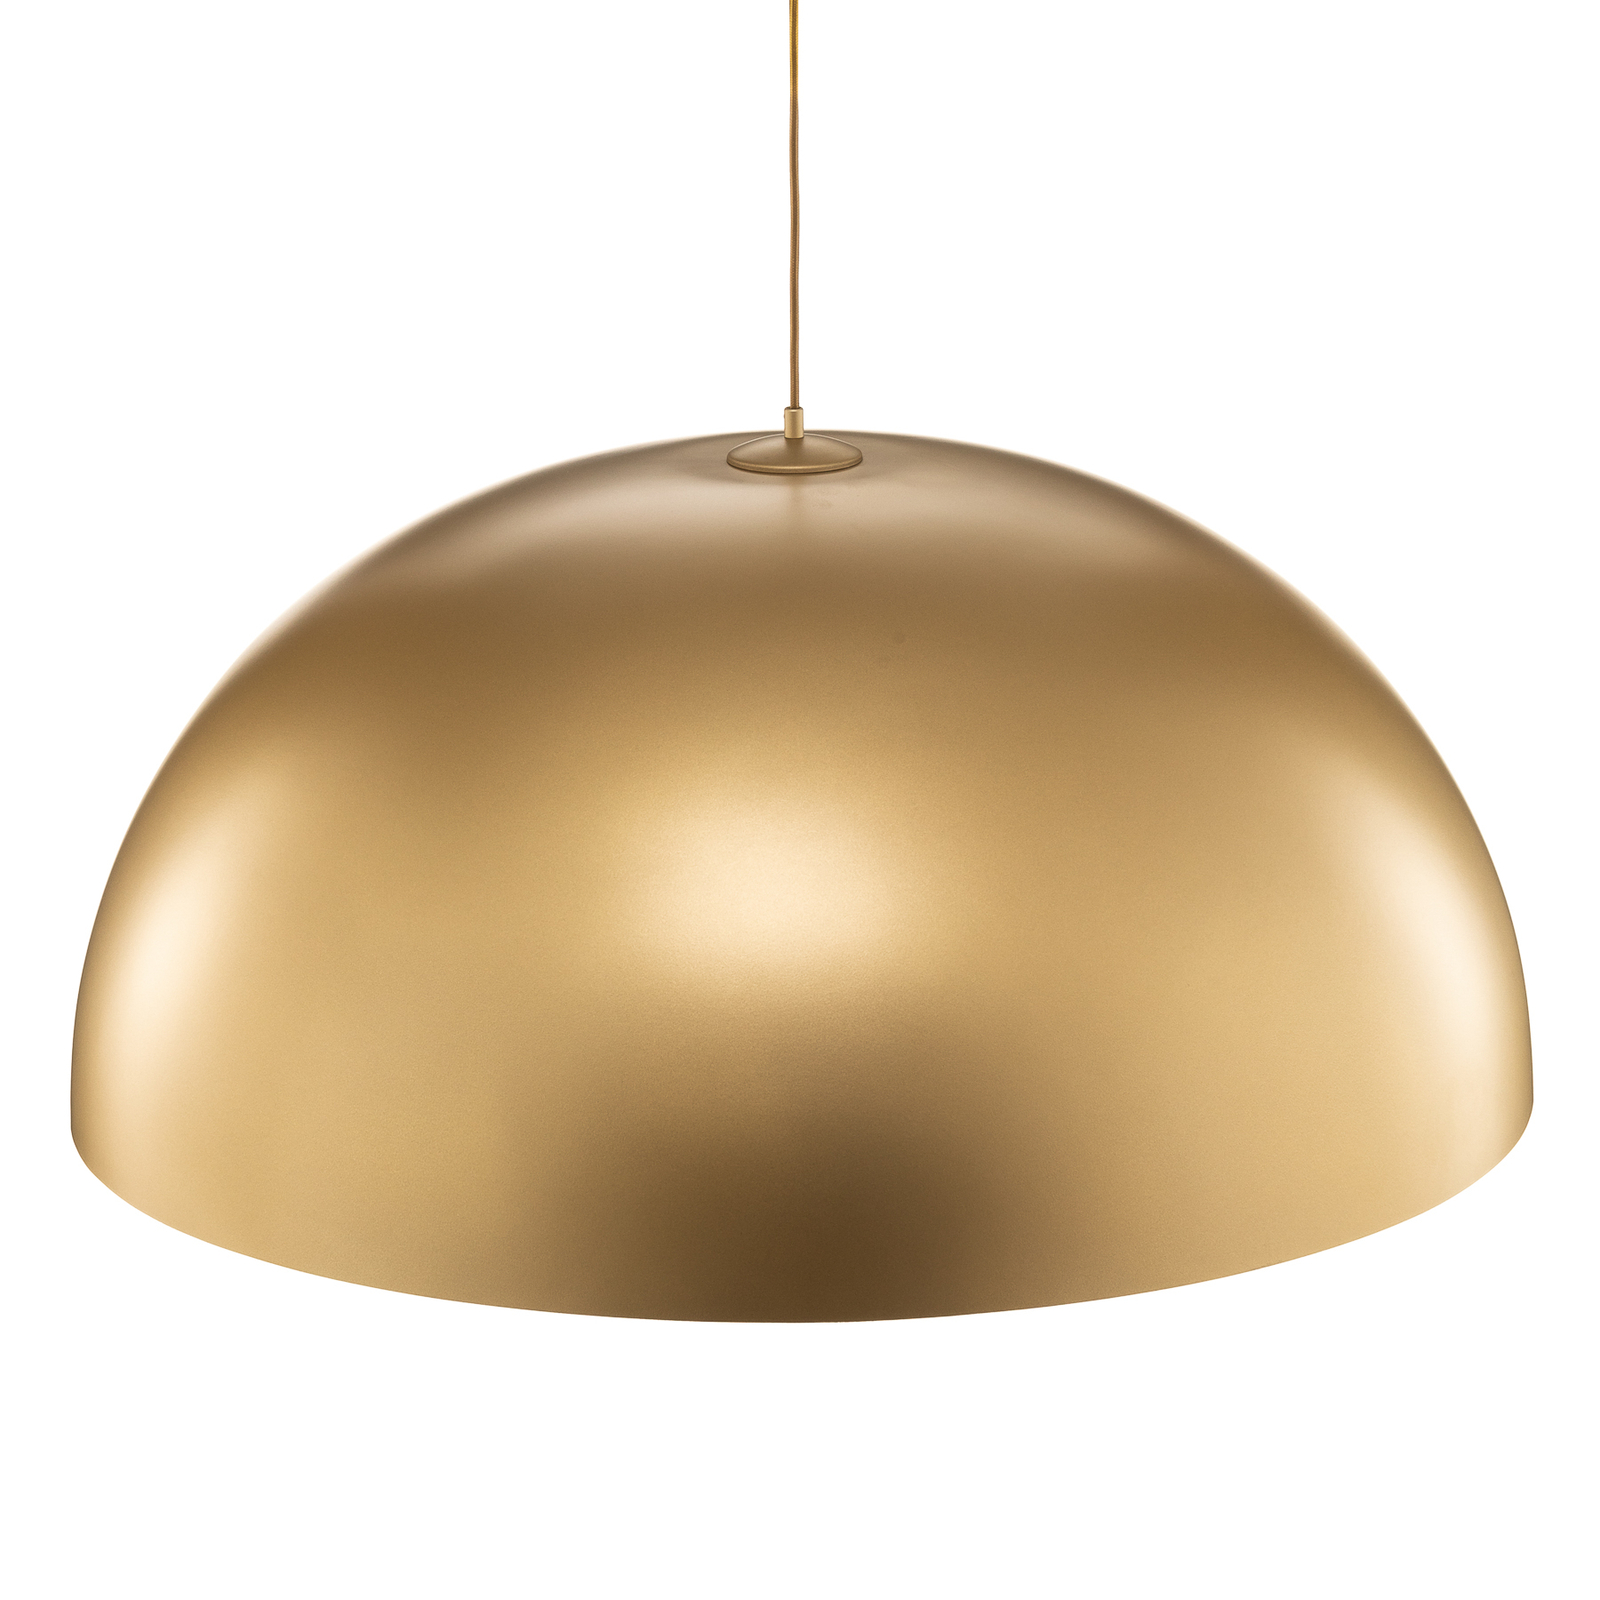 Lampa wisząca Fera, złota/czarna cętkowana Ø90cm